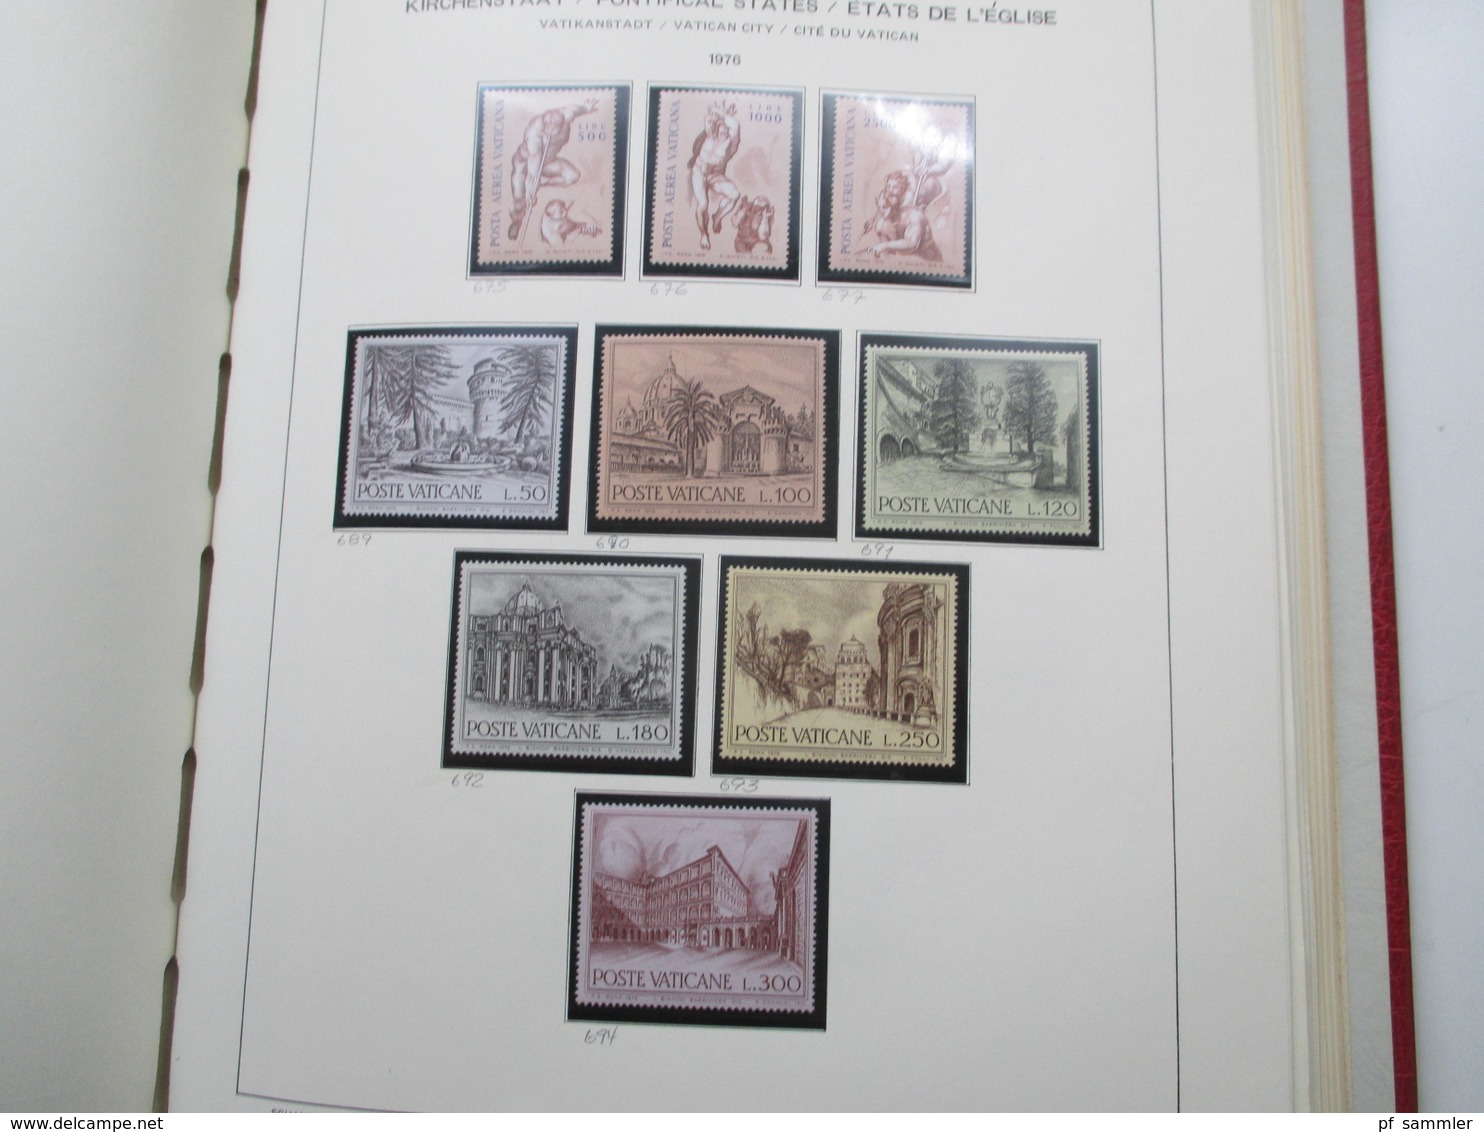 Vatican Sammlung ab 1929 - 1986 ab ca. 59 ** und viele Marken / Sätze + Kirchenstaat Neudrucke!! Leuchtturm Vordruck